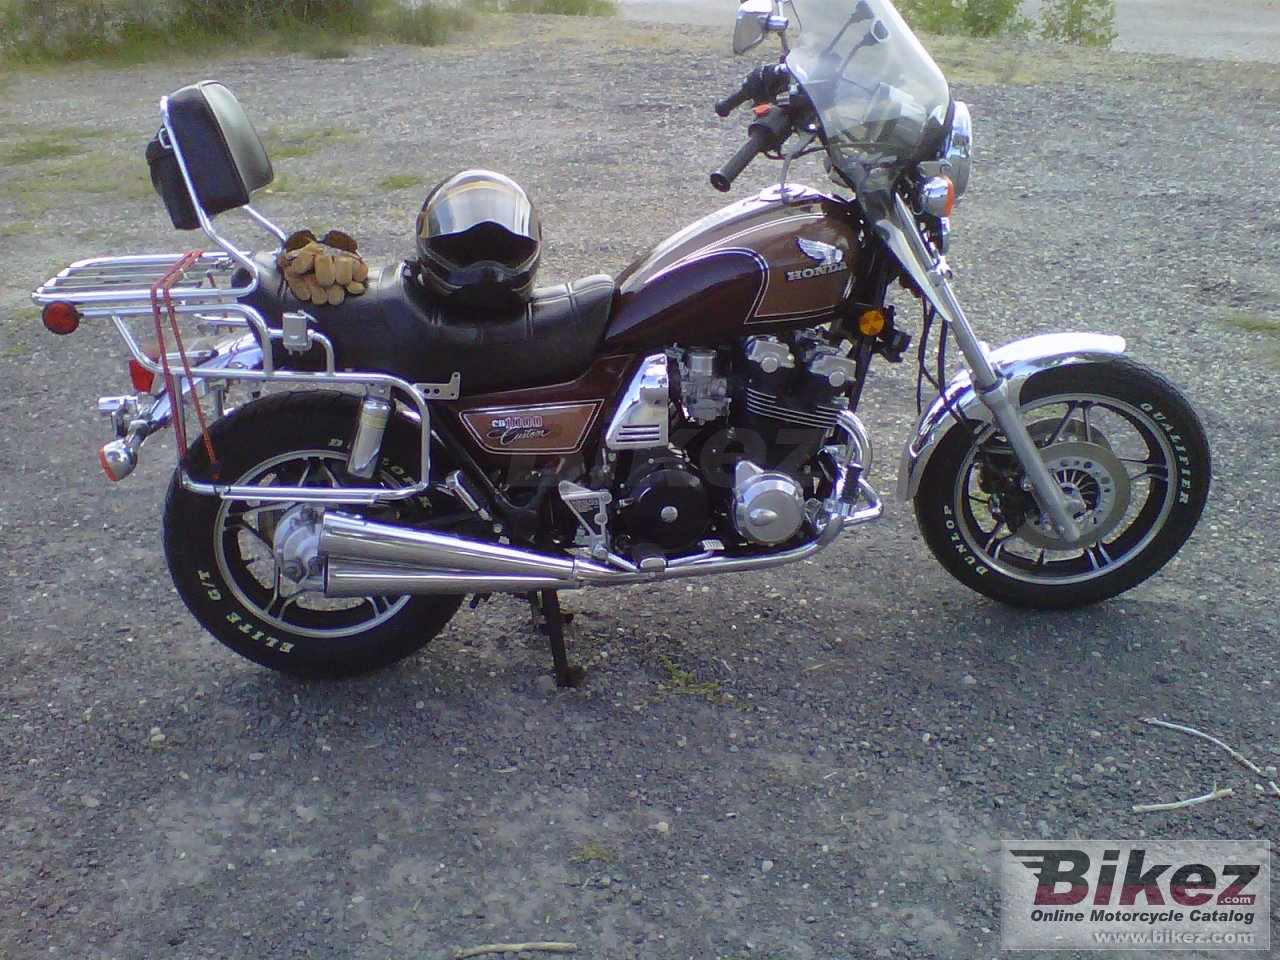 Honda CB 1000 Custom